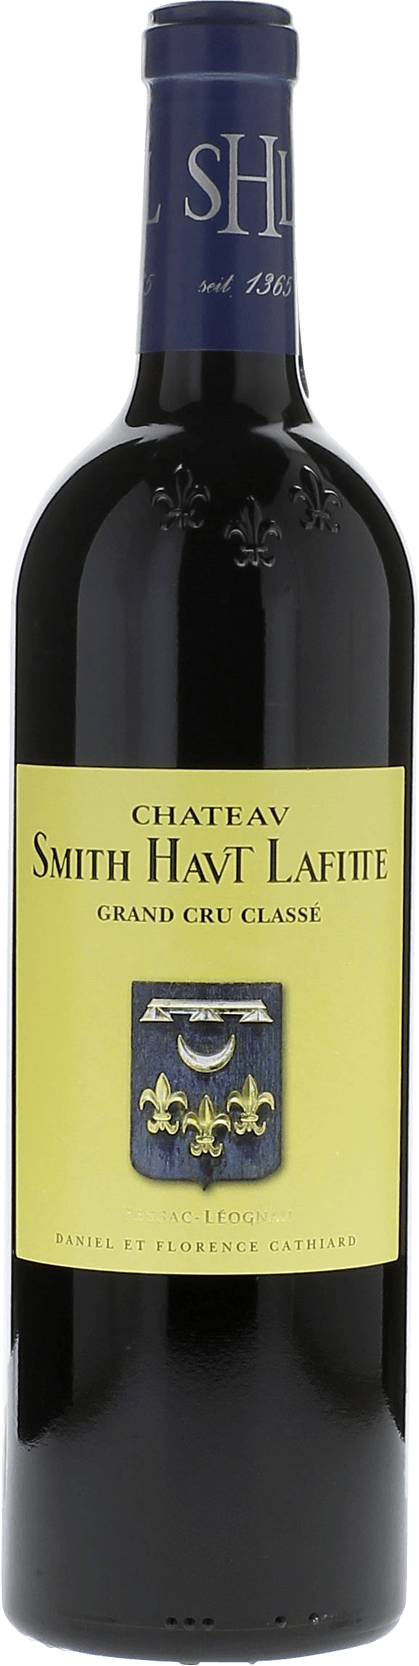 Smith haut lafitte 2005 Grand Cru Class Graves, Bordeaux rouge